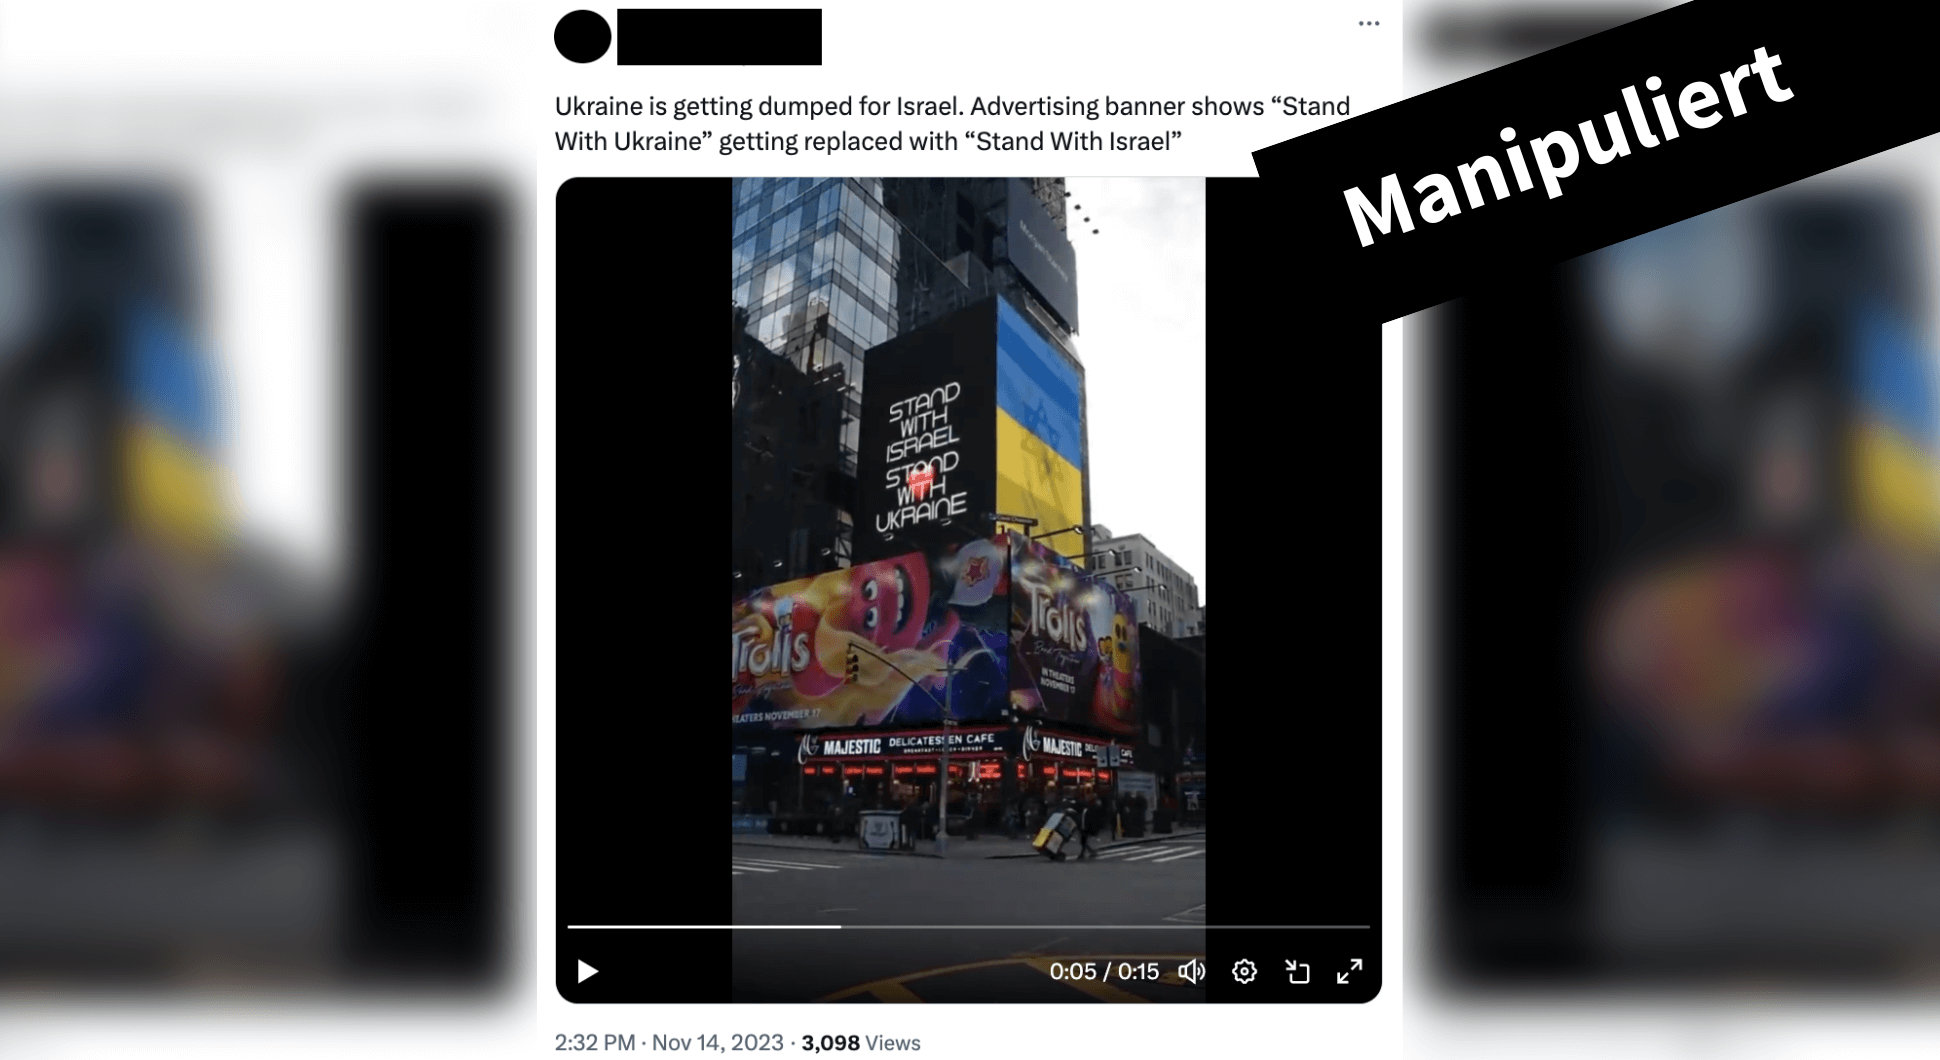 In Sozialen Netzwerken verbreitet sich ein gefälschtes Video einer Werbetafel in New York